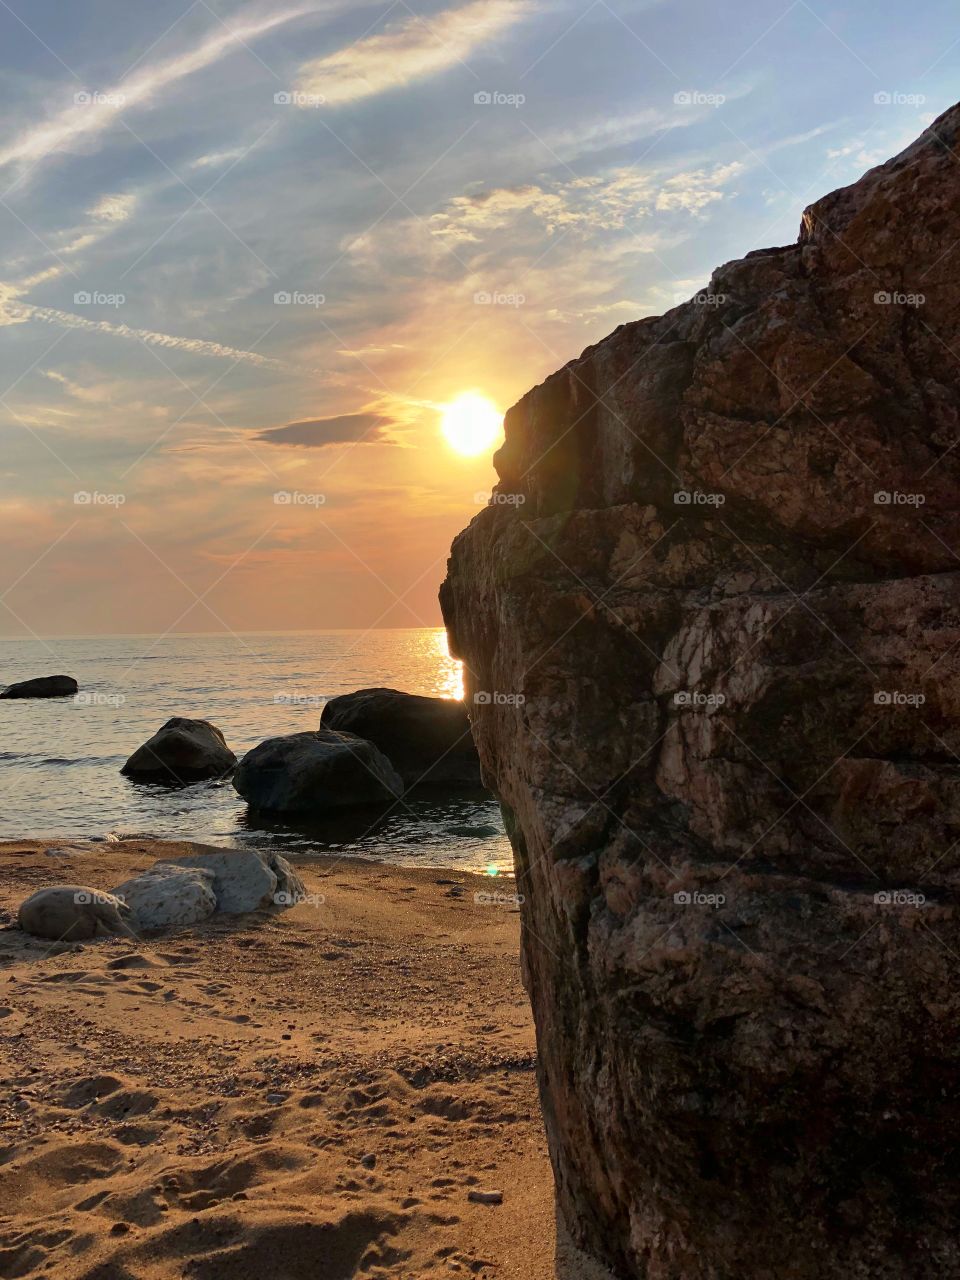 Sunset over a rocky beach 